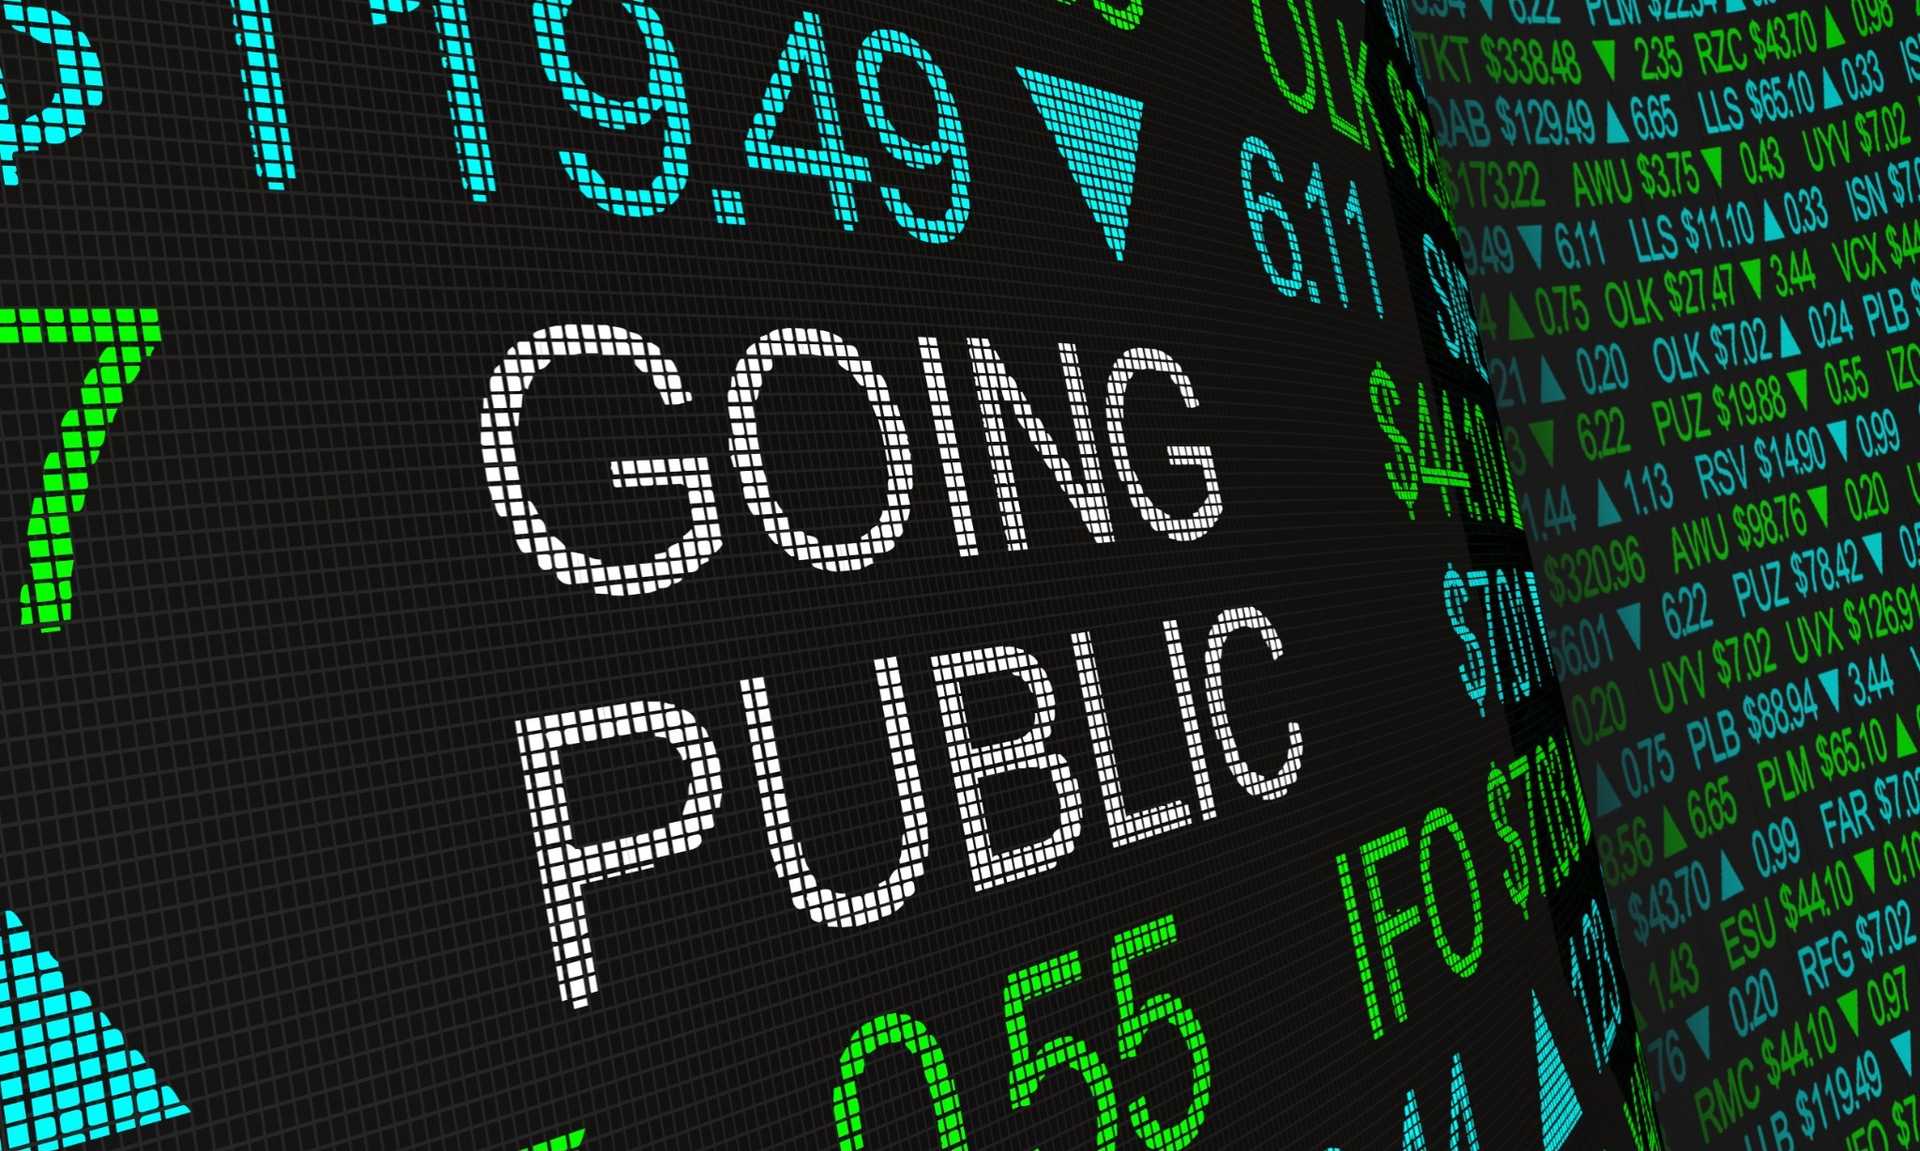 Mengenal 'Go Public' Dan Manfaatnya Bagi Perusahaan